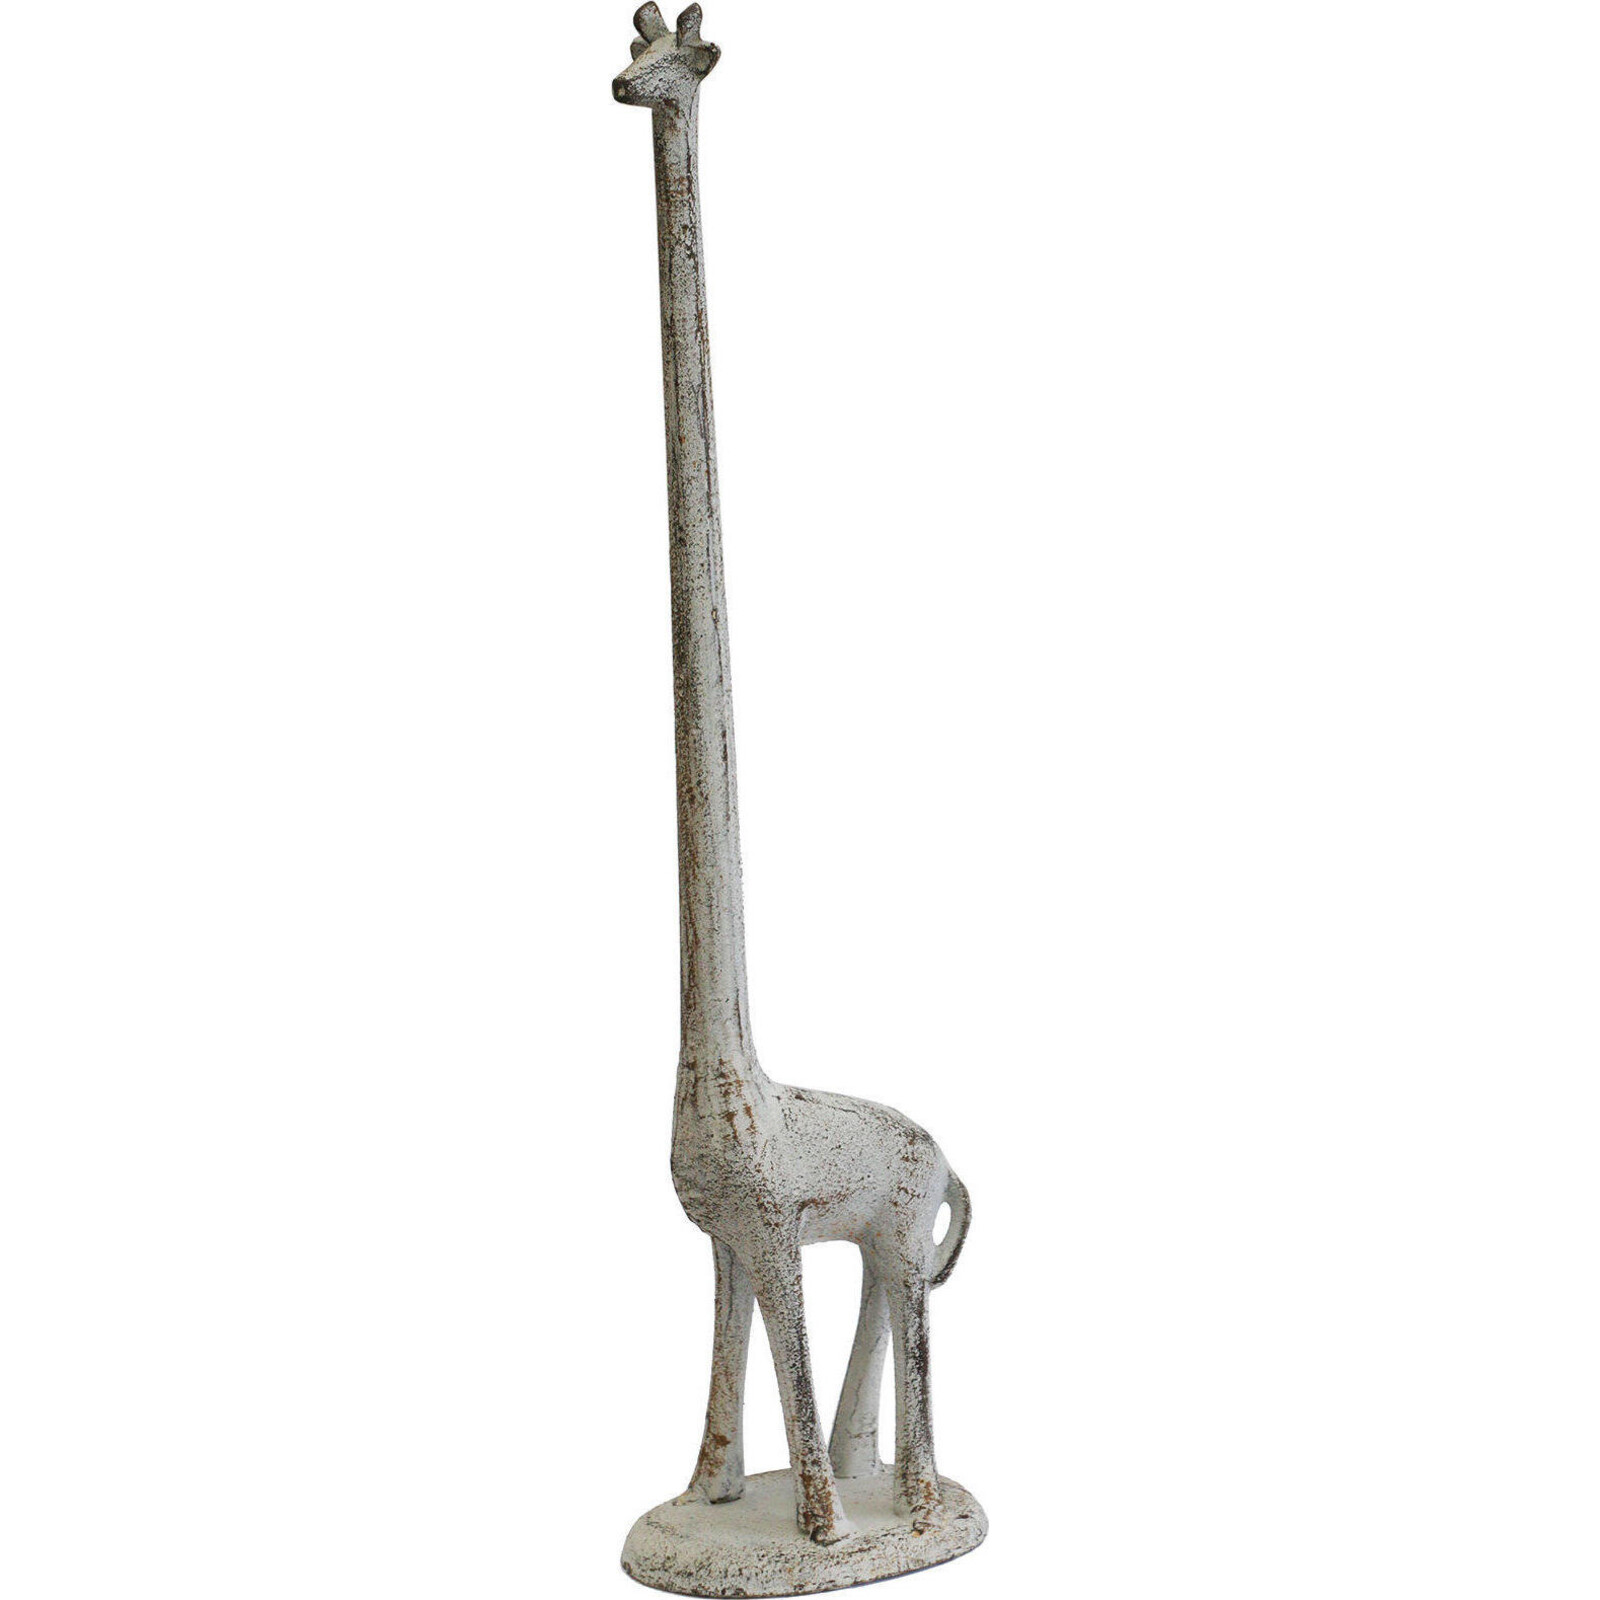 Giraffe Long Neck Tall